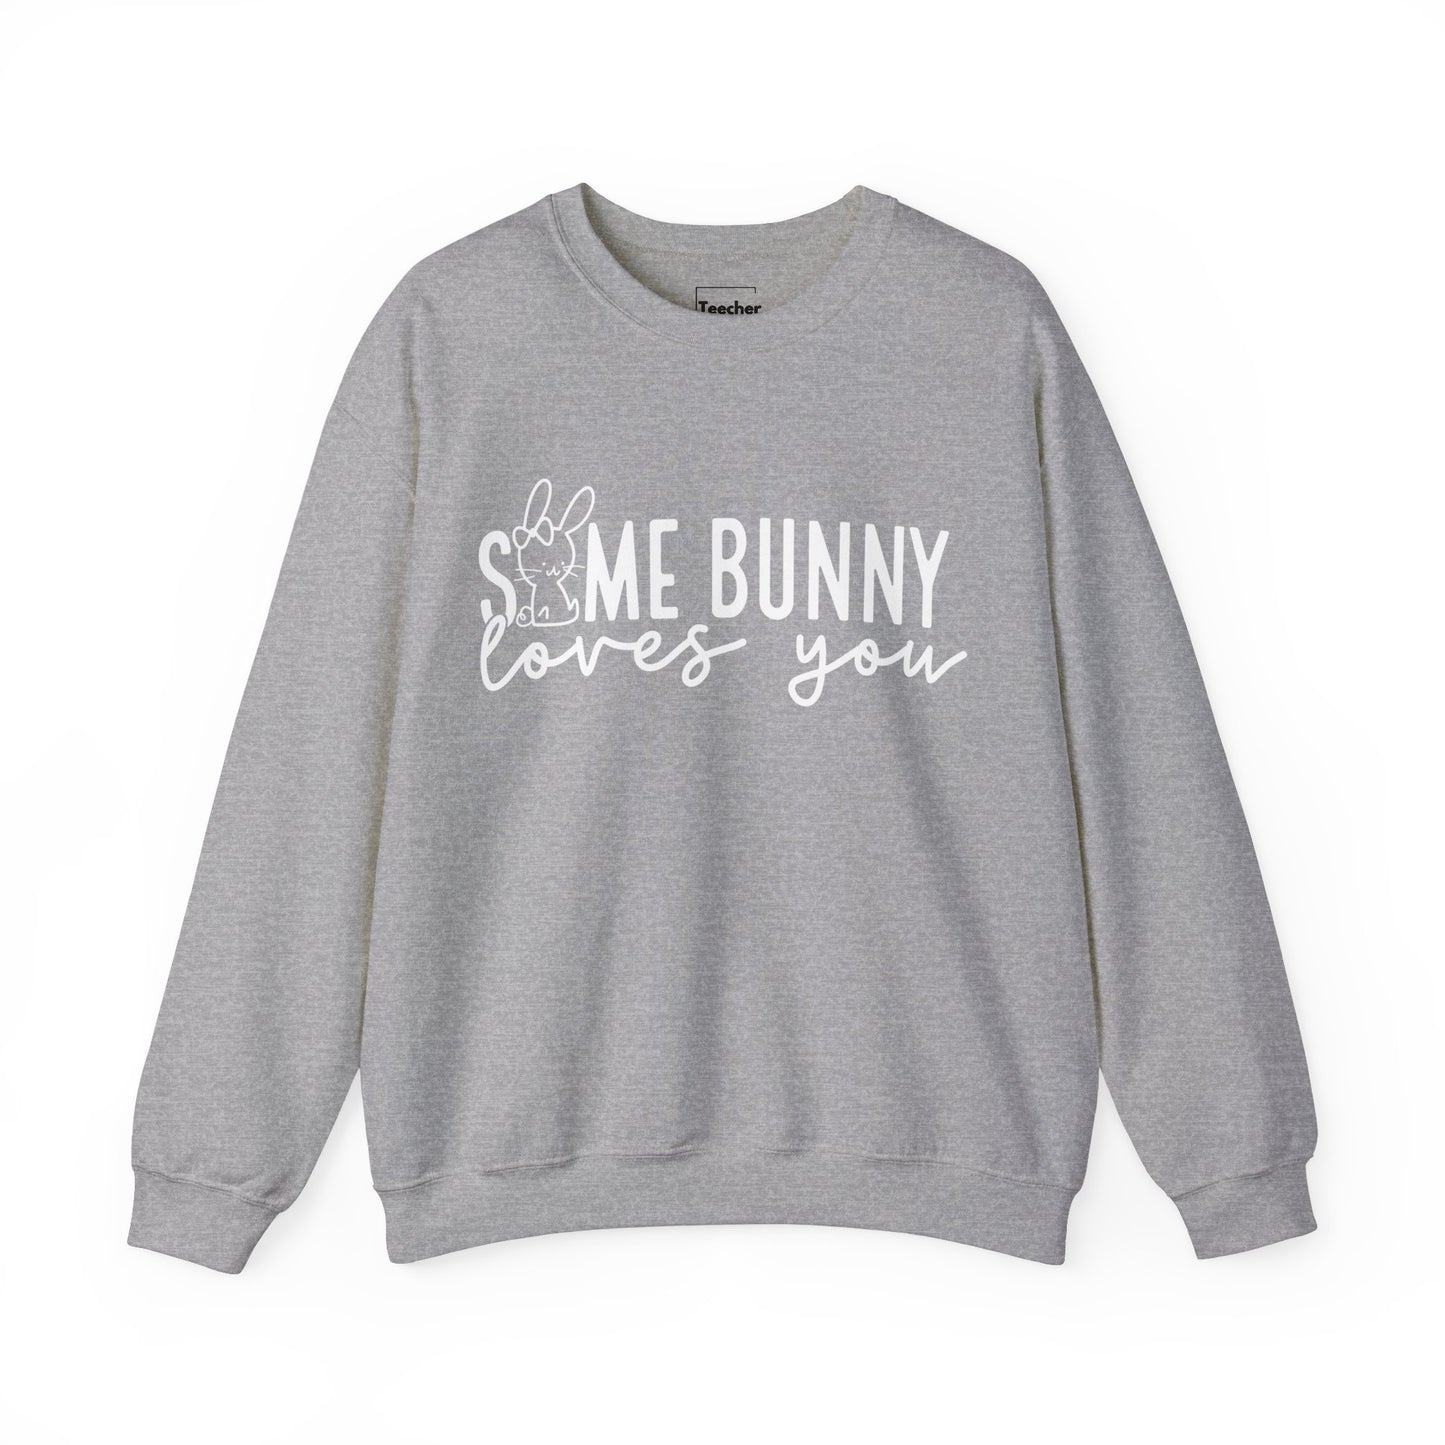 Some Bunny Sweatshirt